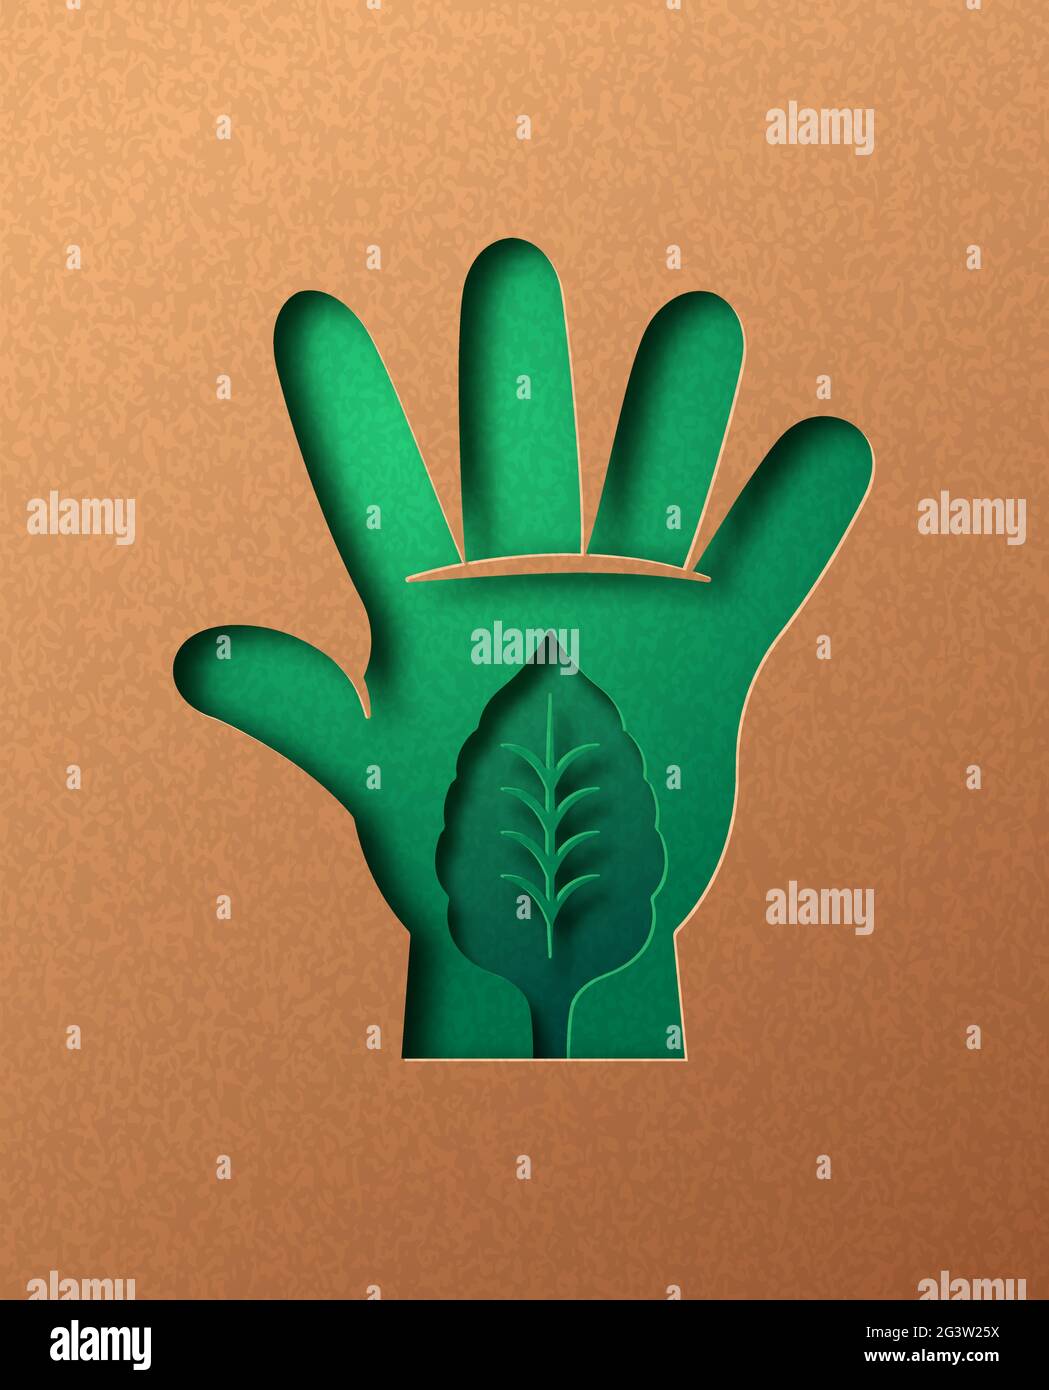 Persone verdi mano papercut illustrazione con foglia di pianta. Stile di vita delle persone eco-friendly, connessione alla natura o concetto ambientale. ritaglio 3d in ricicla Illustrazione Vettoriale